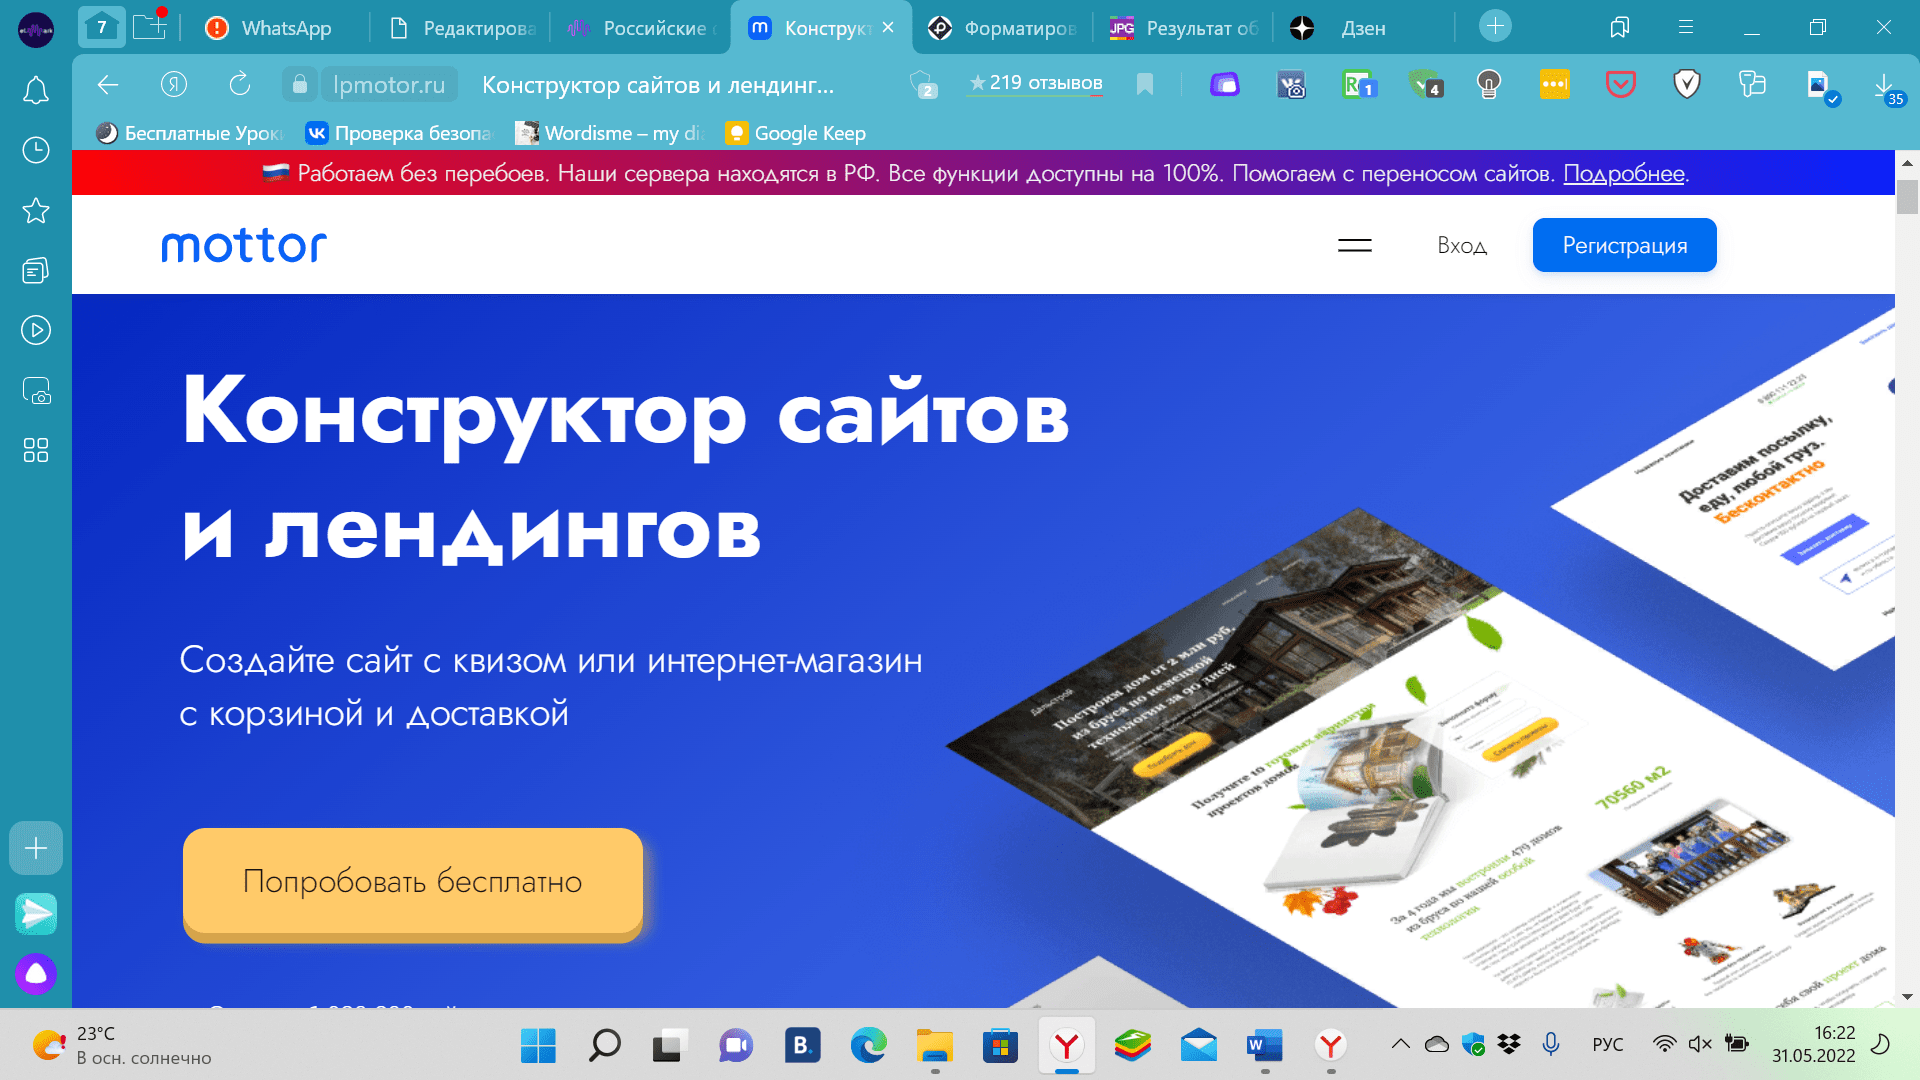 Российские digital-cервисы в маркетинге